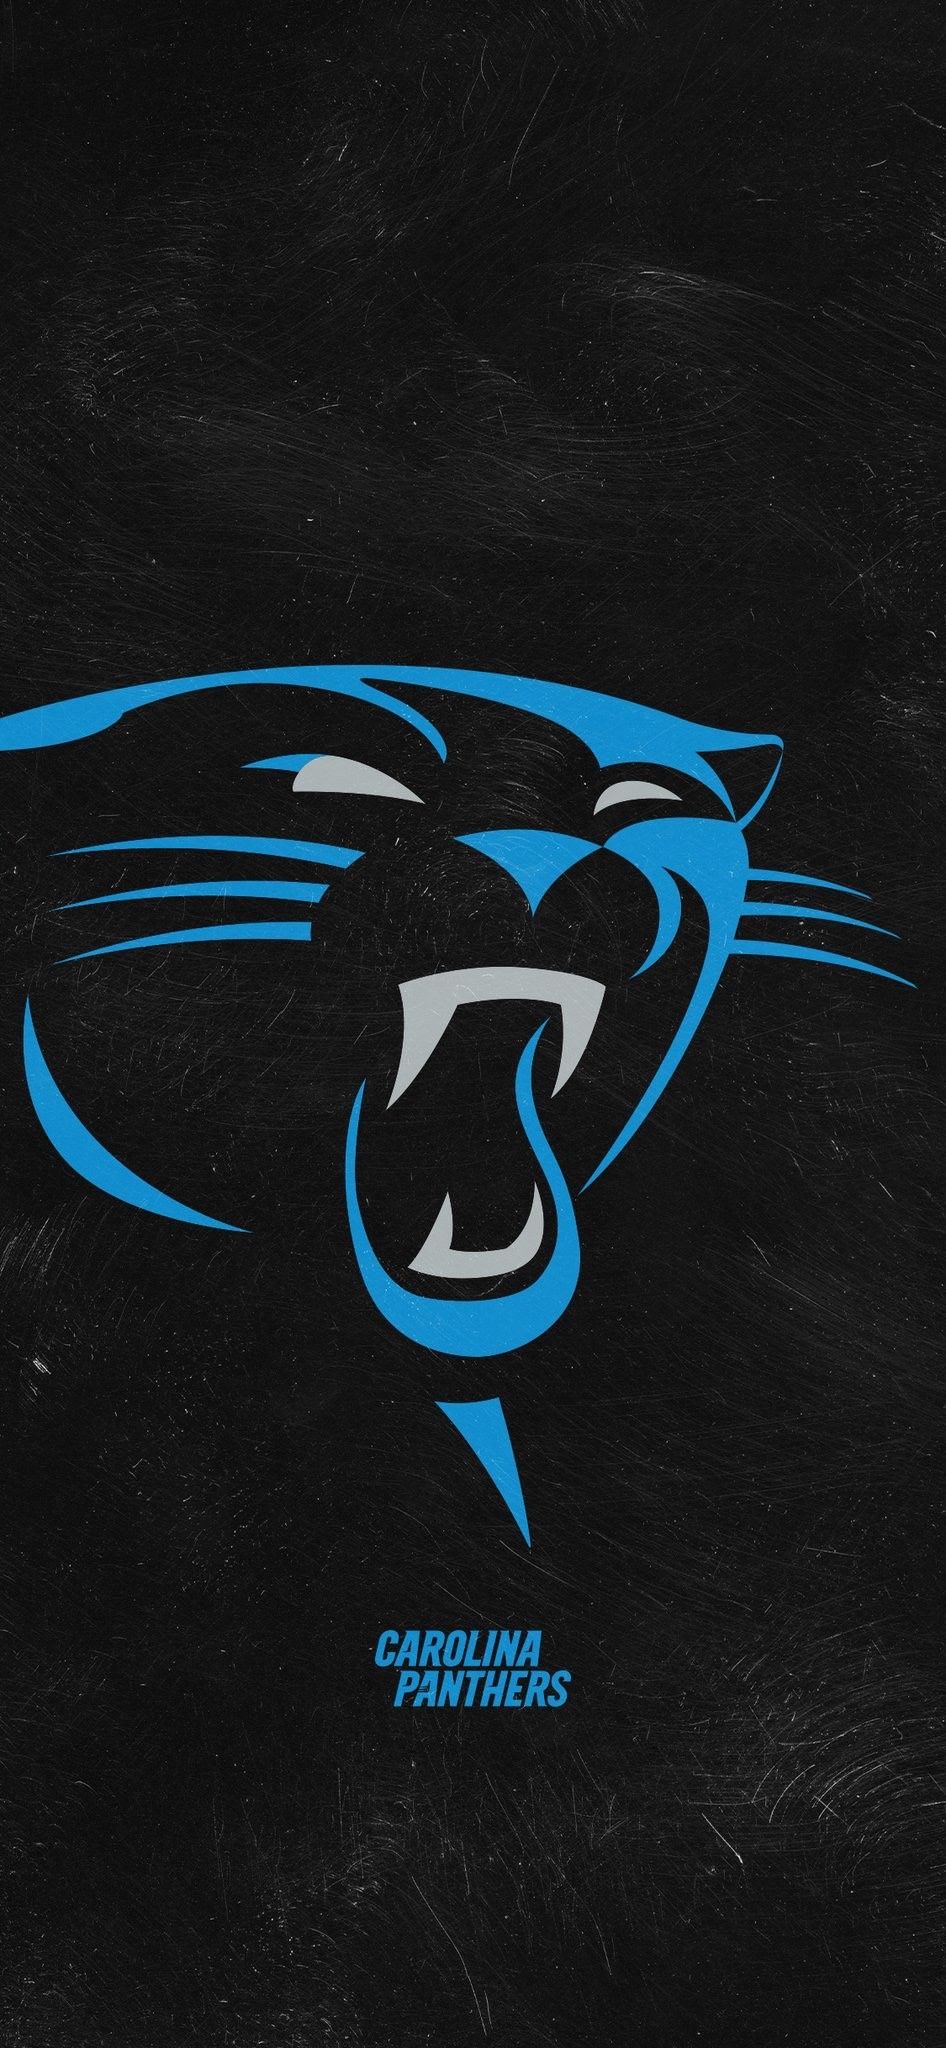 Carolina Panthers Wallpaper Top